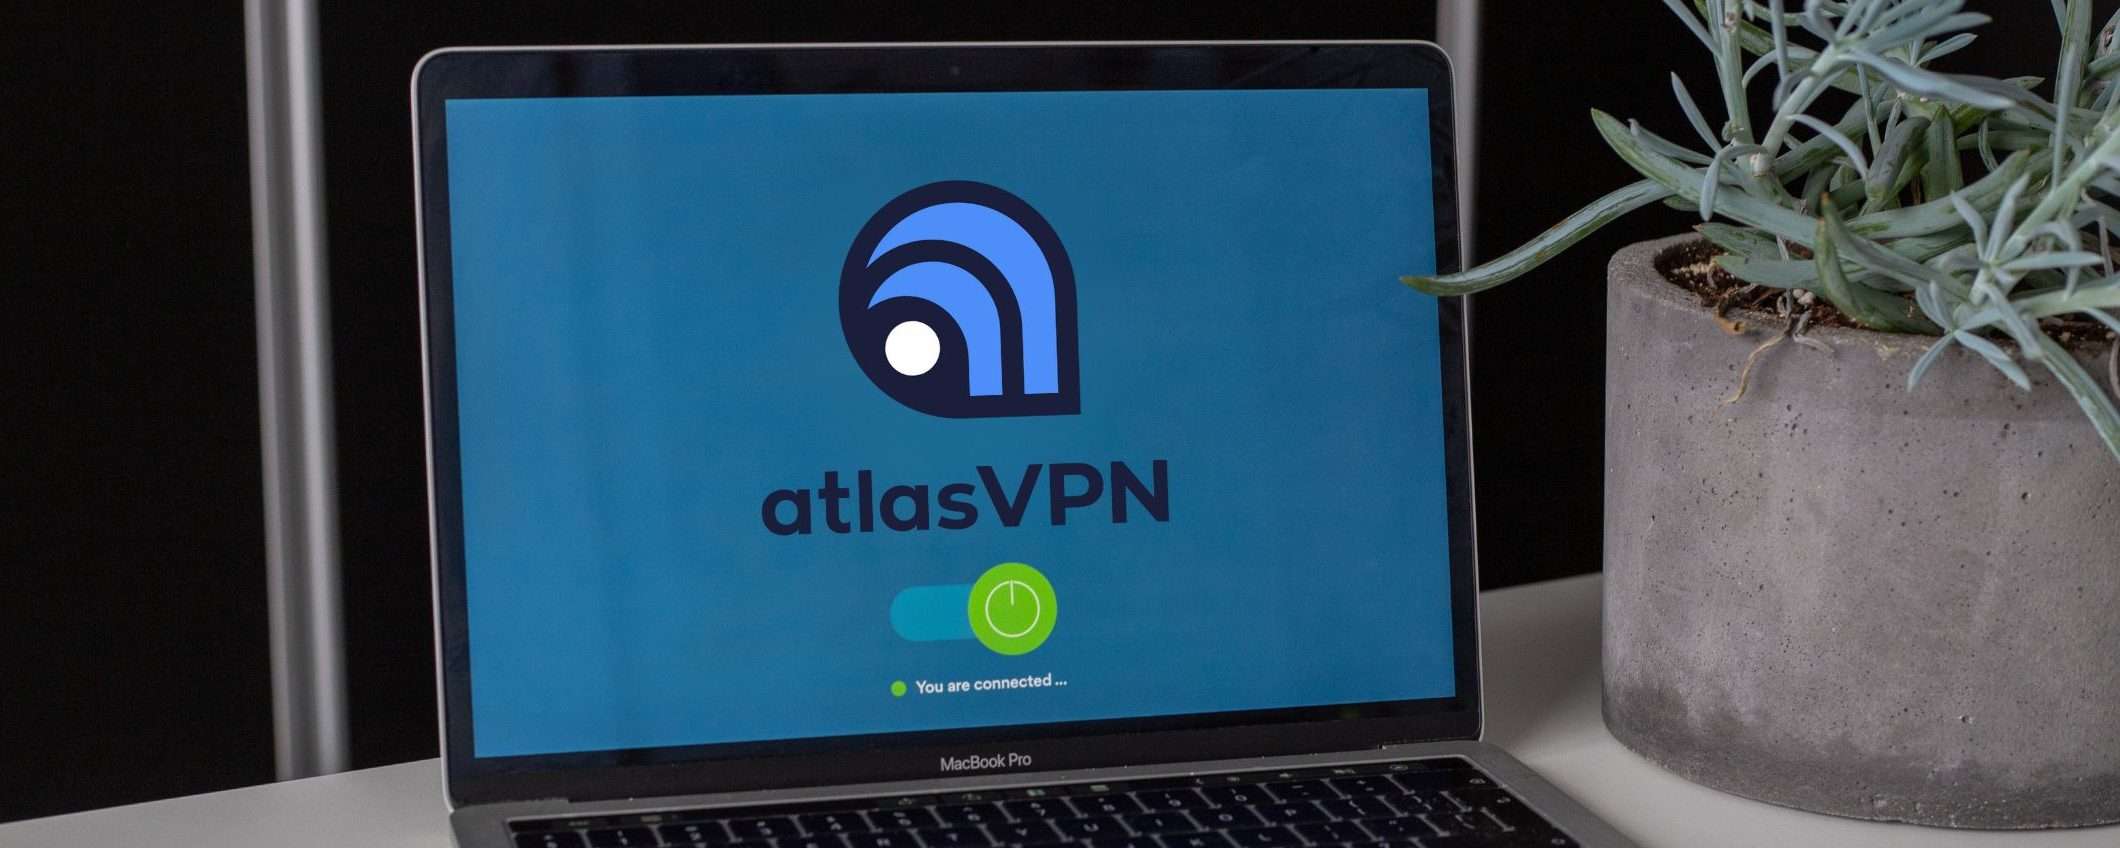 Atlas VPN in offerta speciale: solo 1,54€ al mese